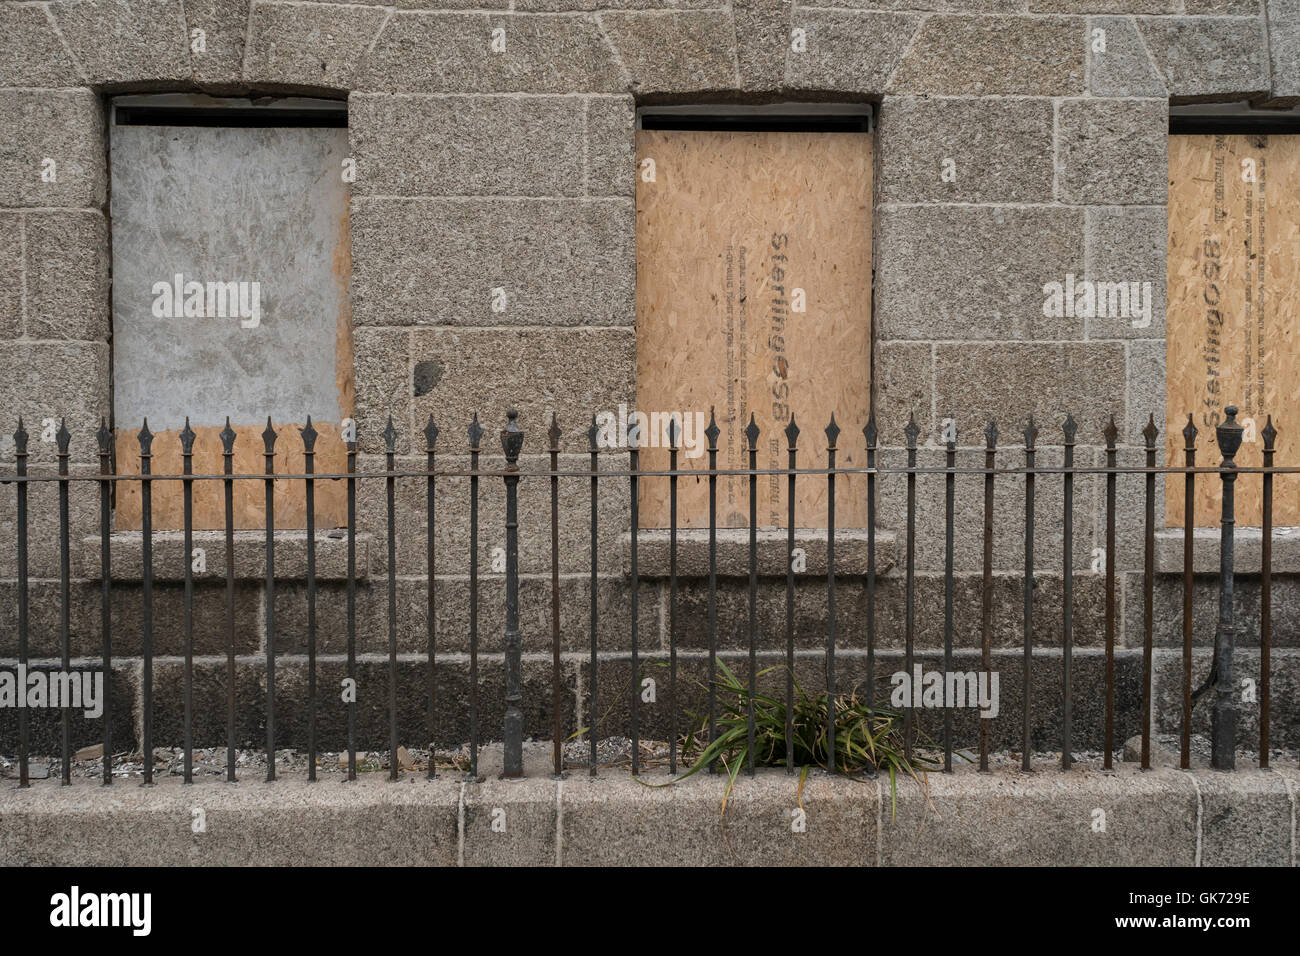 Fenêtre avec volets d'ancien bâtiment en pierre, avec fer forgé visible. En tant que métaphore de la notion d'accès refusé, ou barrière. Banque D'Images